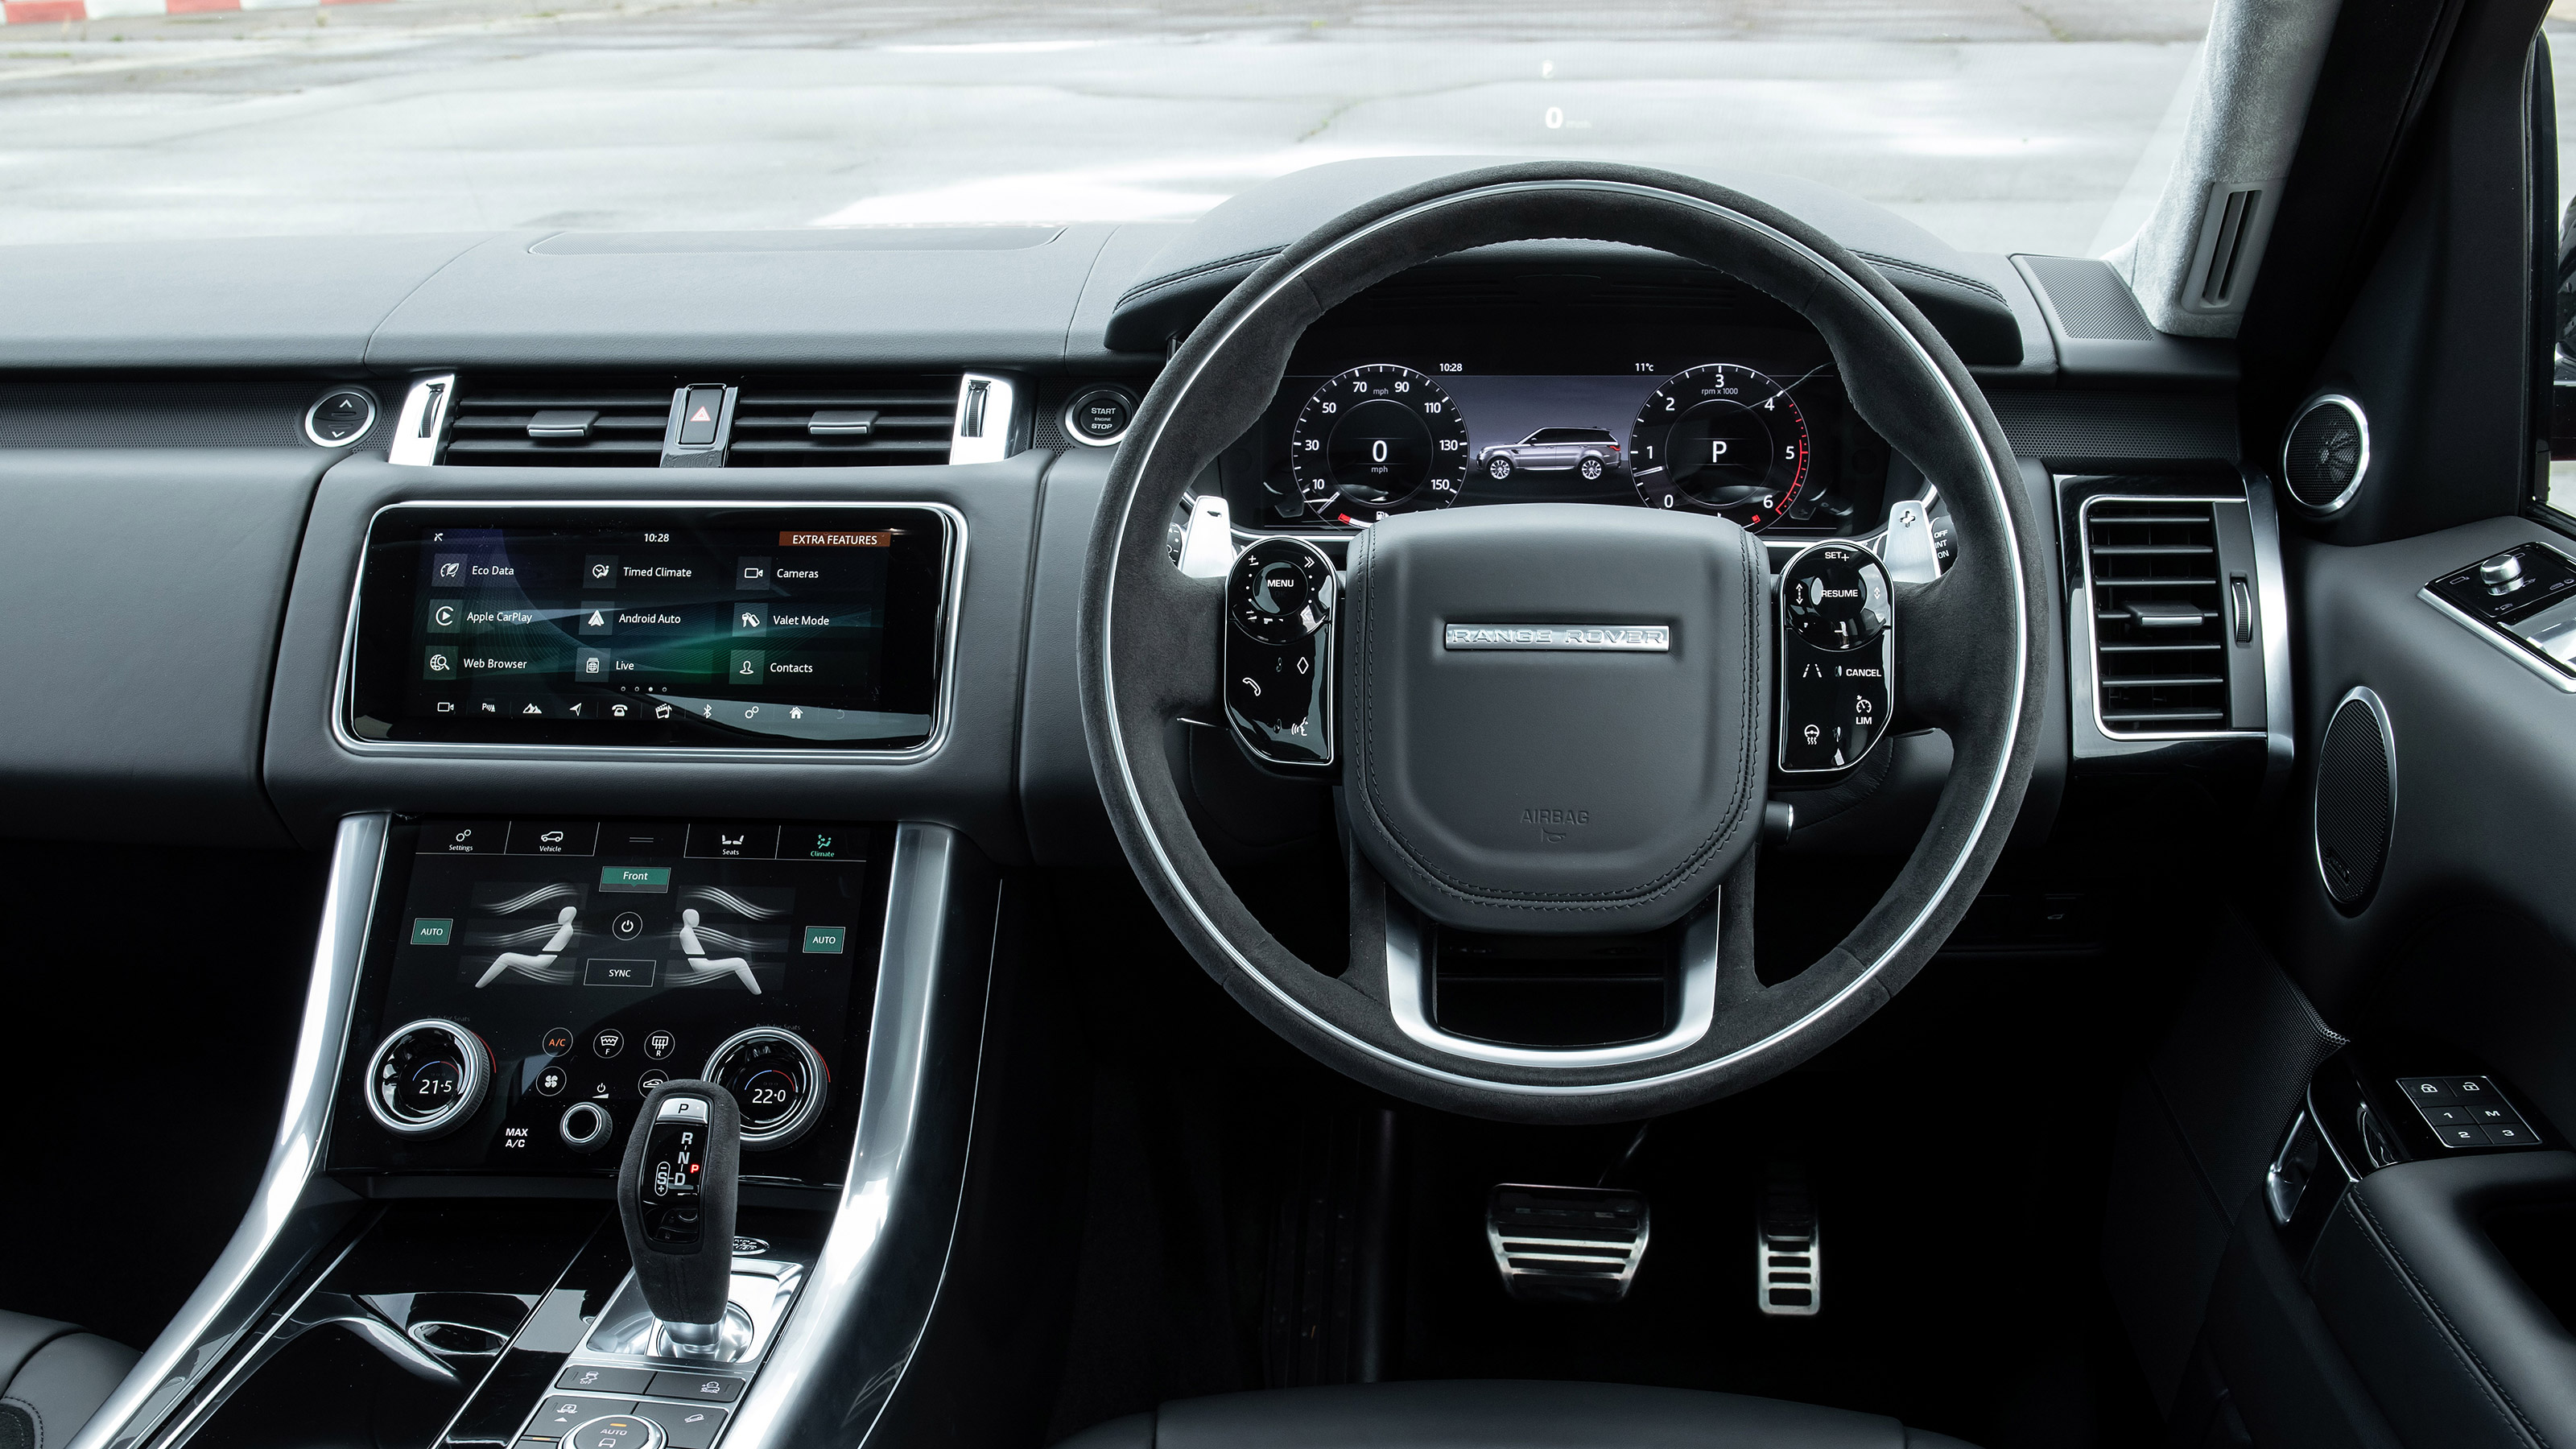 Range Rover Sport interior and tech evo